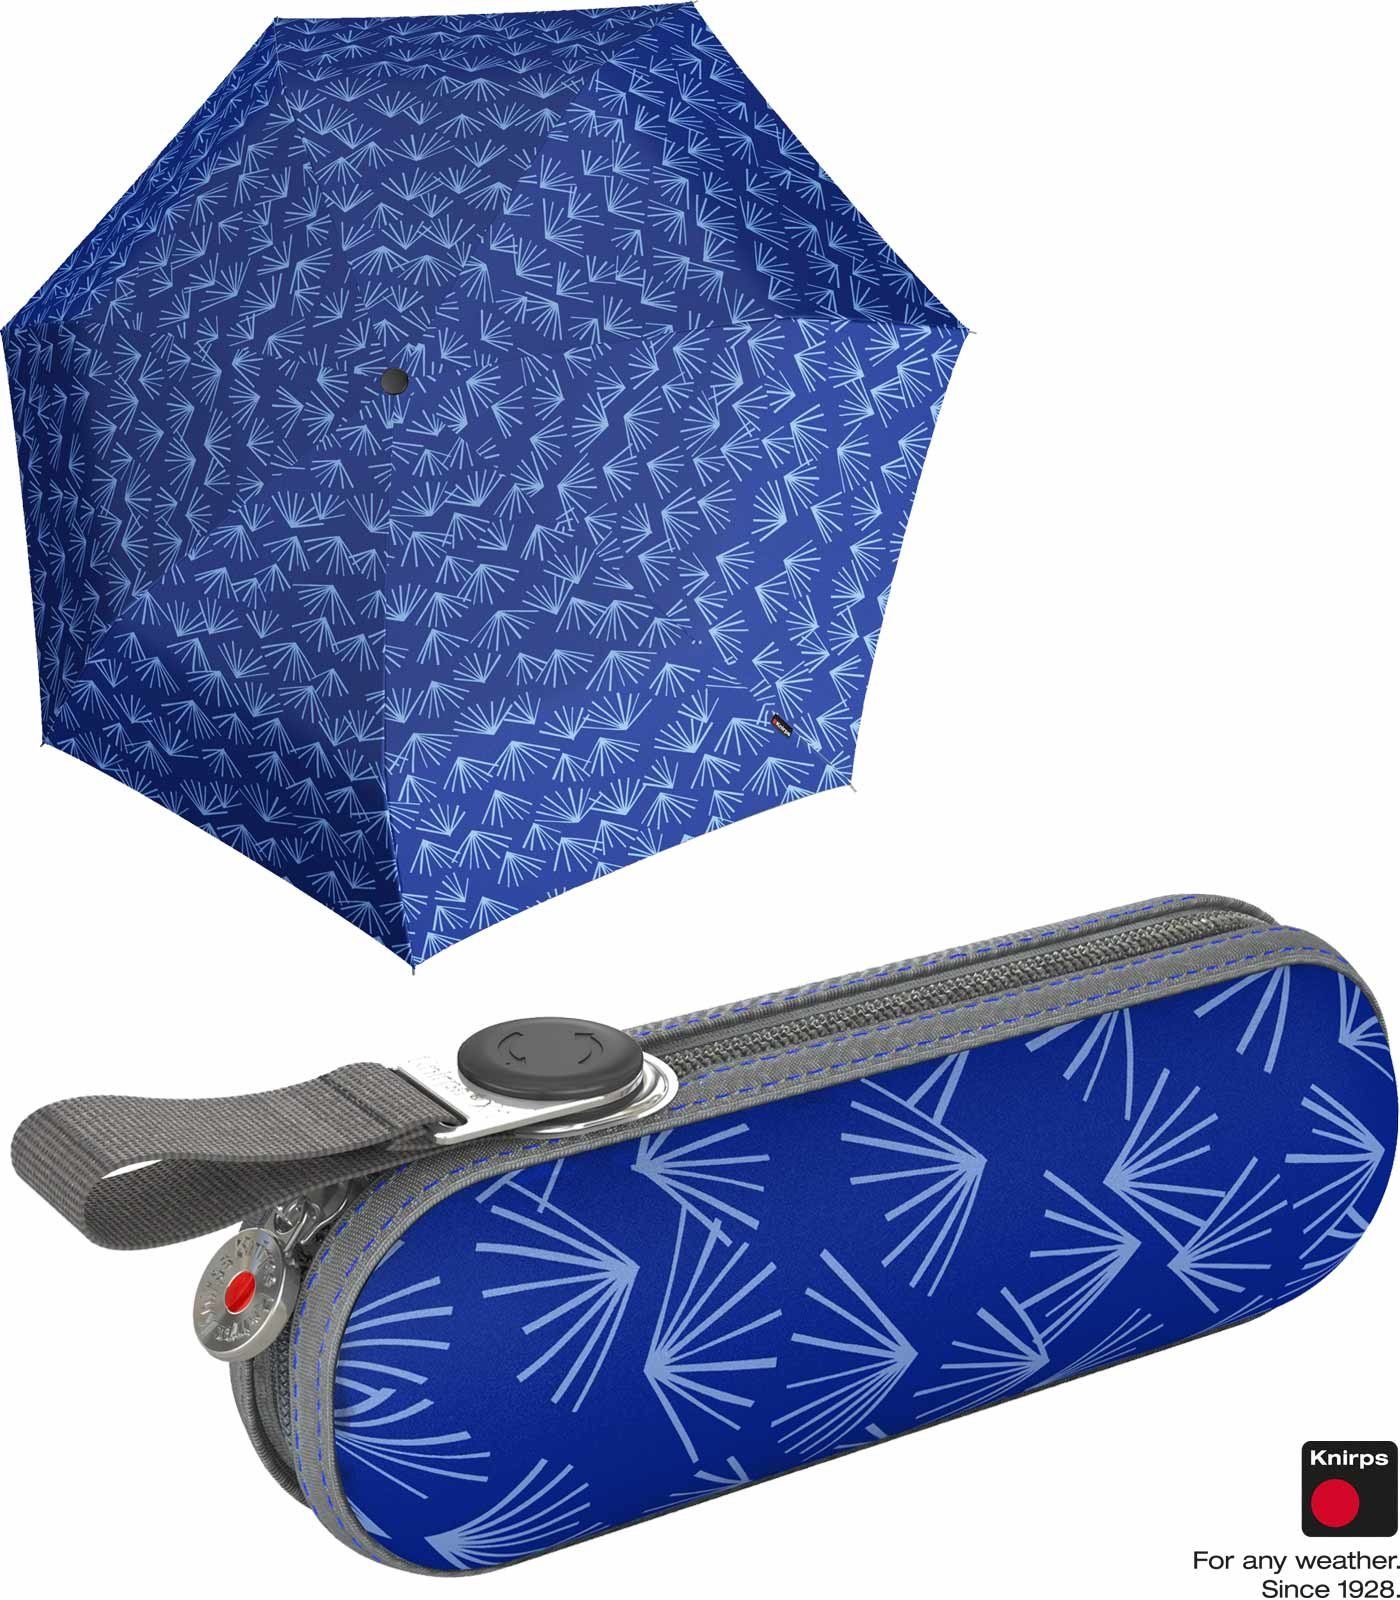 Knirps® Taschenregenschirm Super Mini X1 im Hard-Case - Nuno Kasa, der kleine, leichte, kompakte Begleiter blau